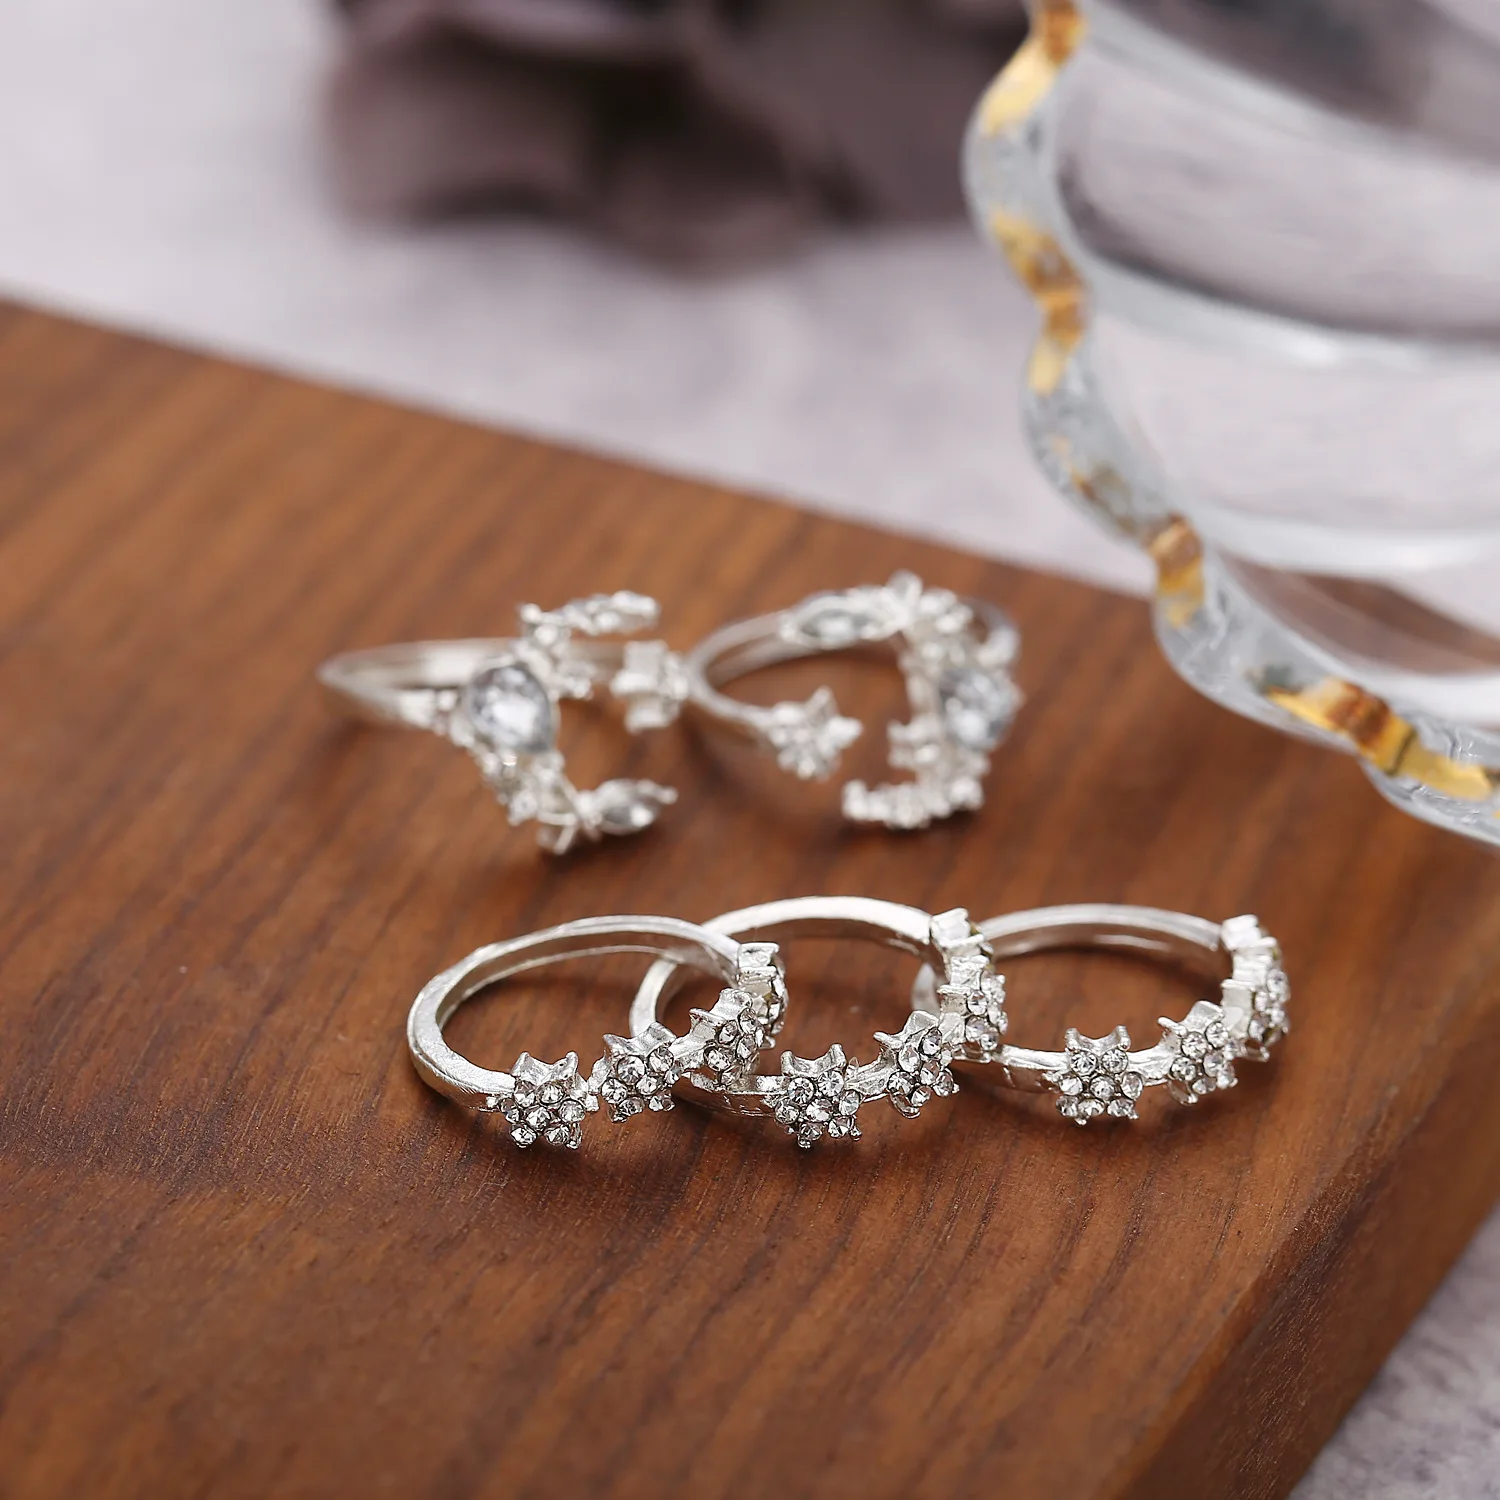 Faahion 5 шт./компл. кристаллы Луна и звезда набор колец Простые полые серебряные Открытые Кольца для женщин подарок на свадьбу юбилей